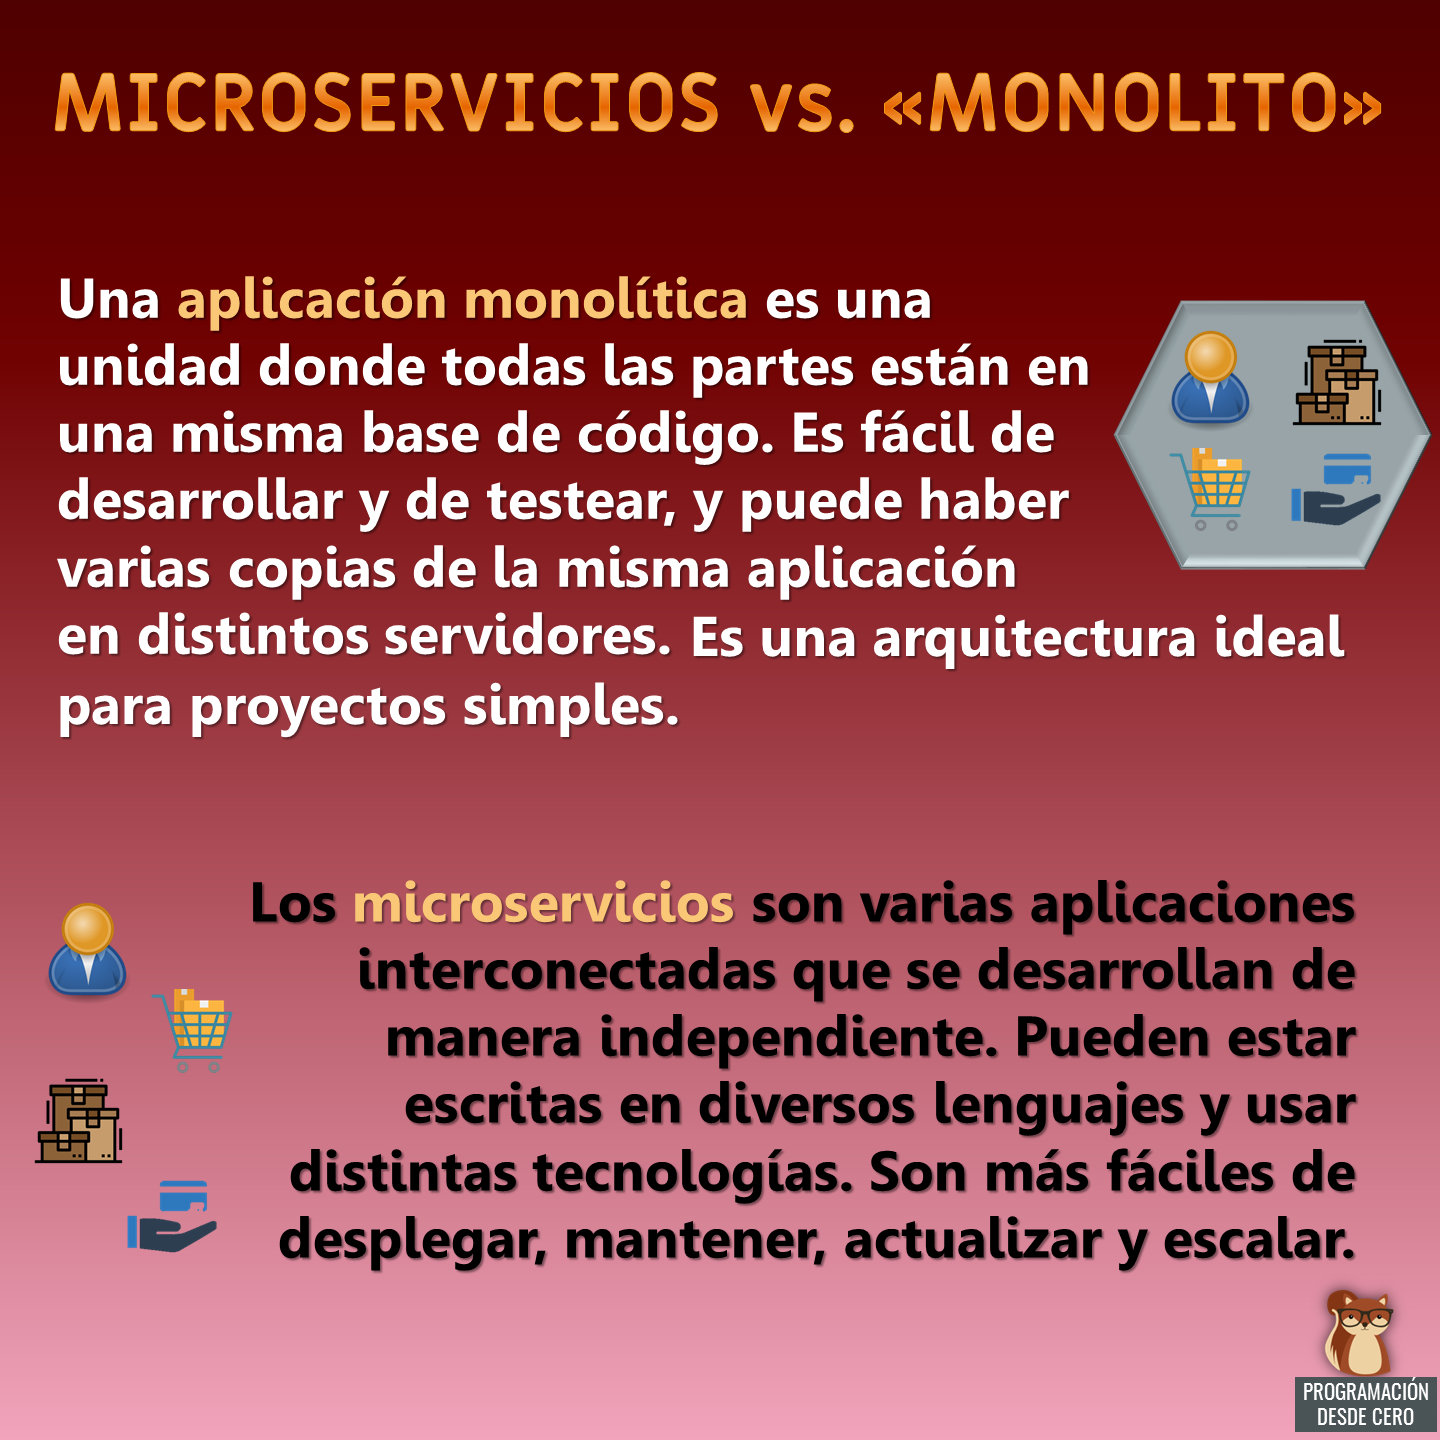 Microservicios vs. "monolito"